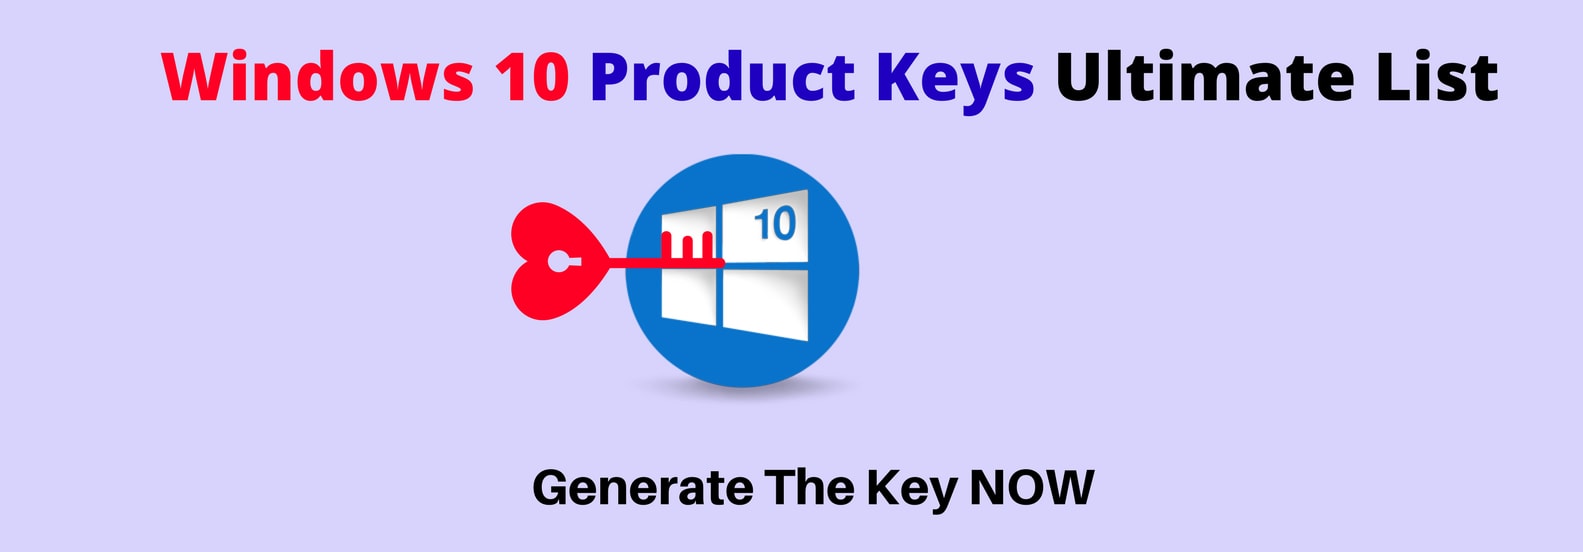 slider 1 for product keys